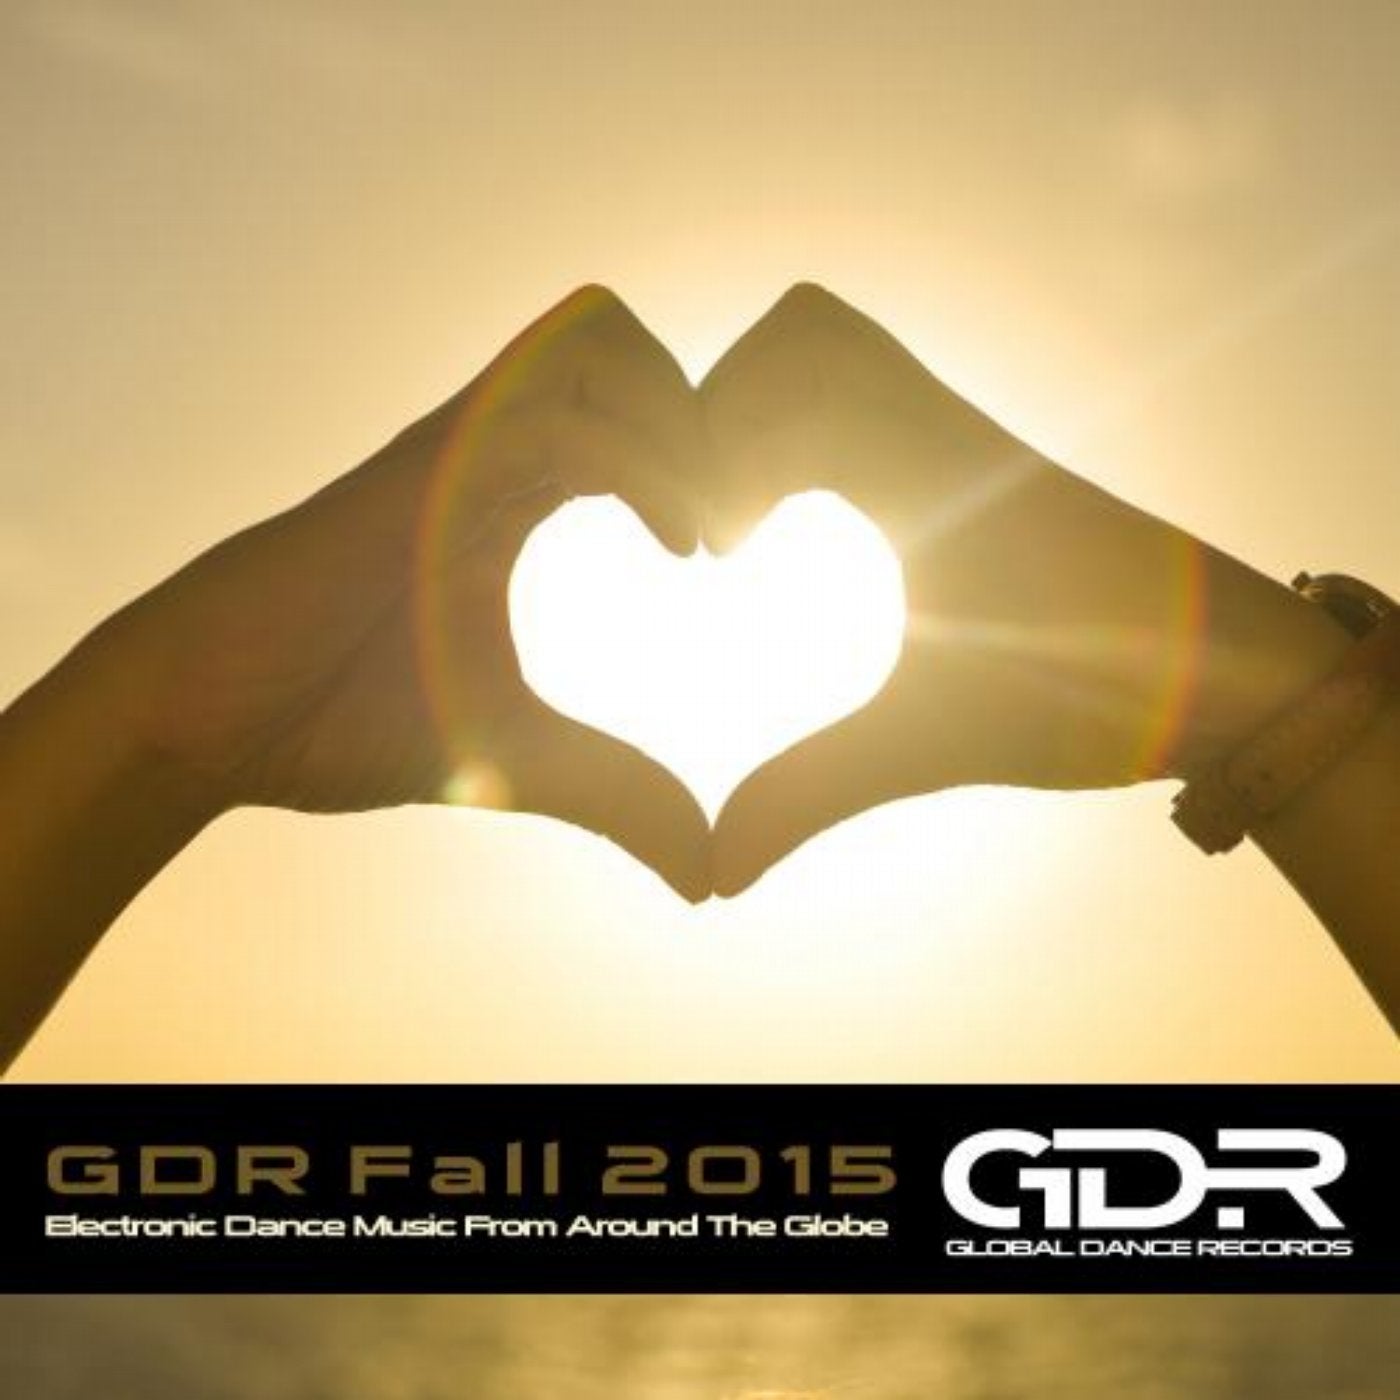 GDR Fall 2015